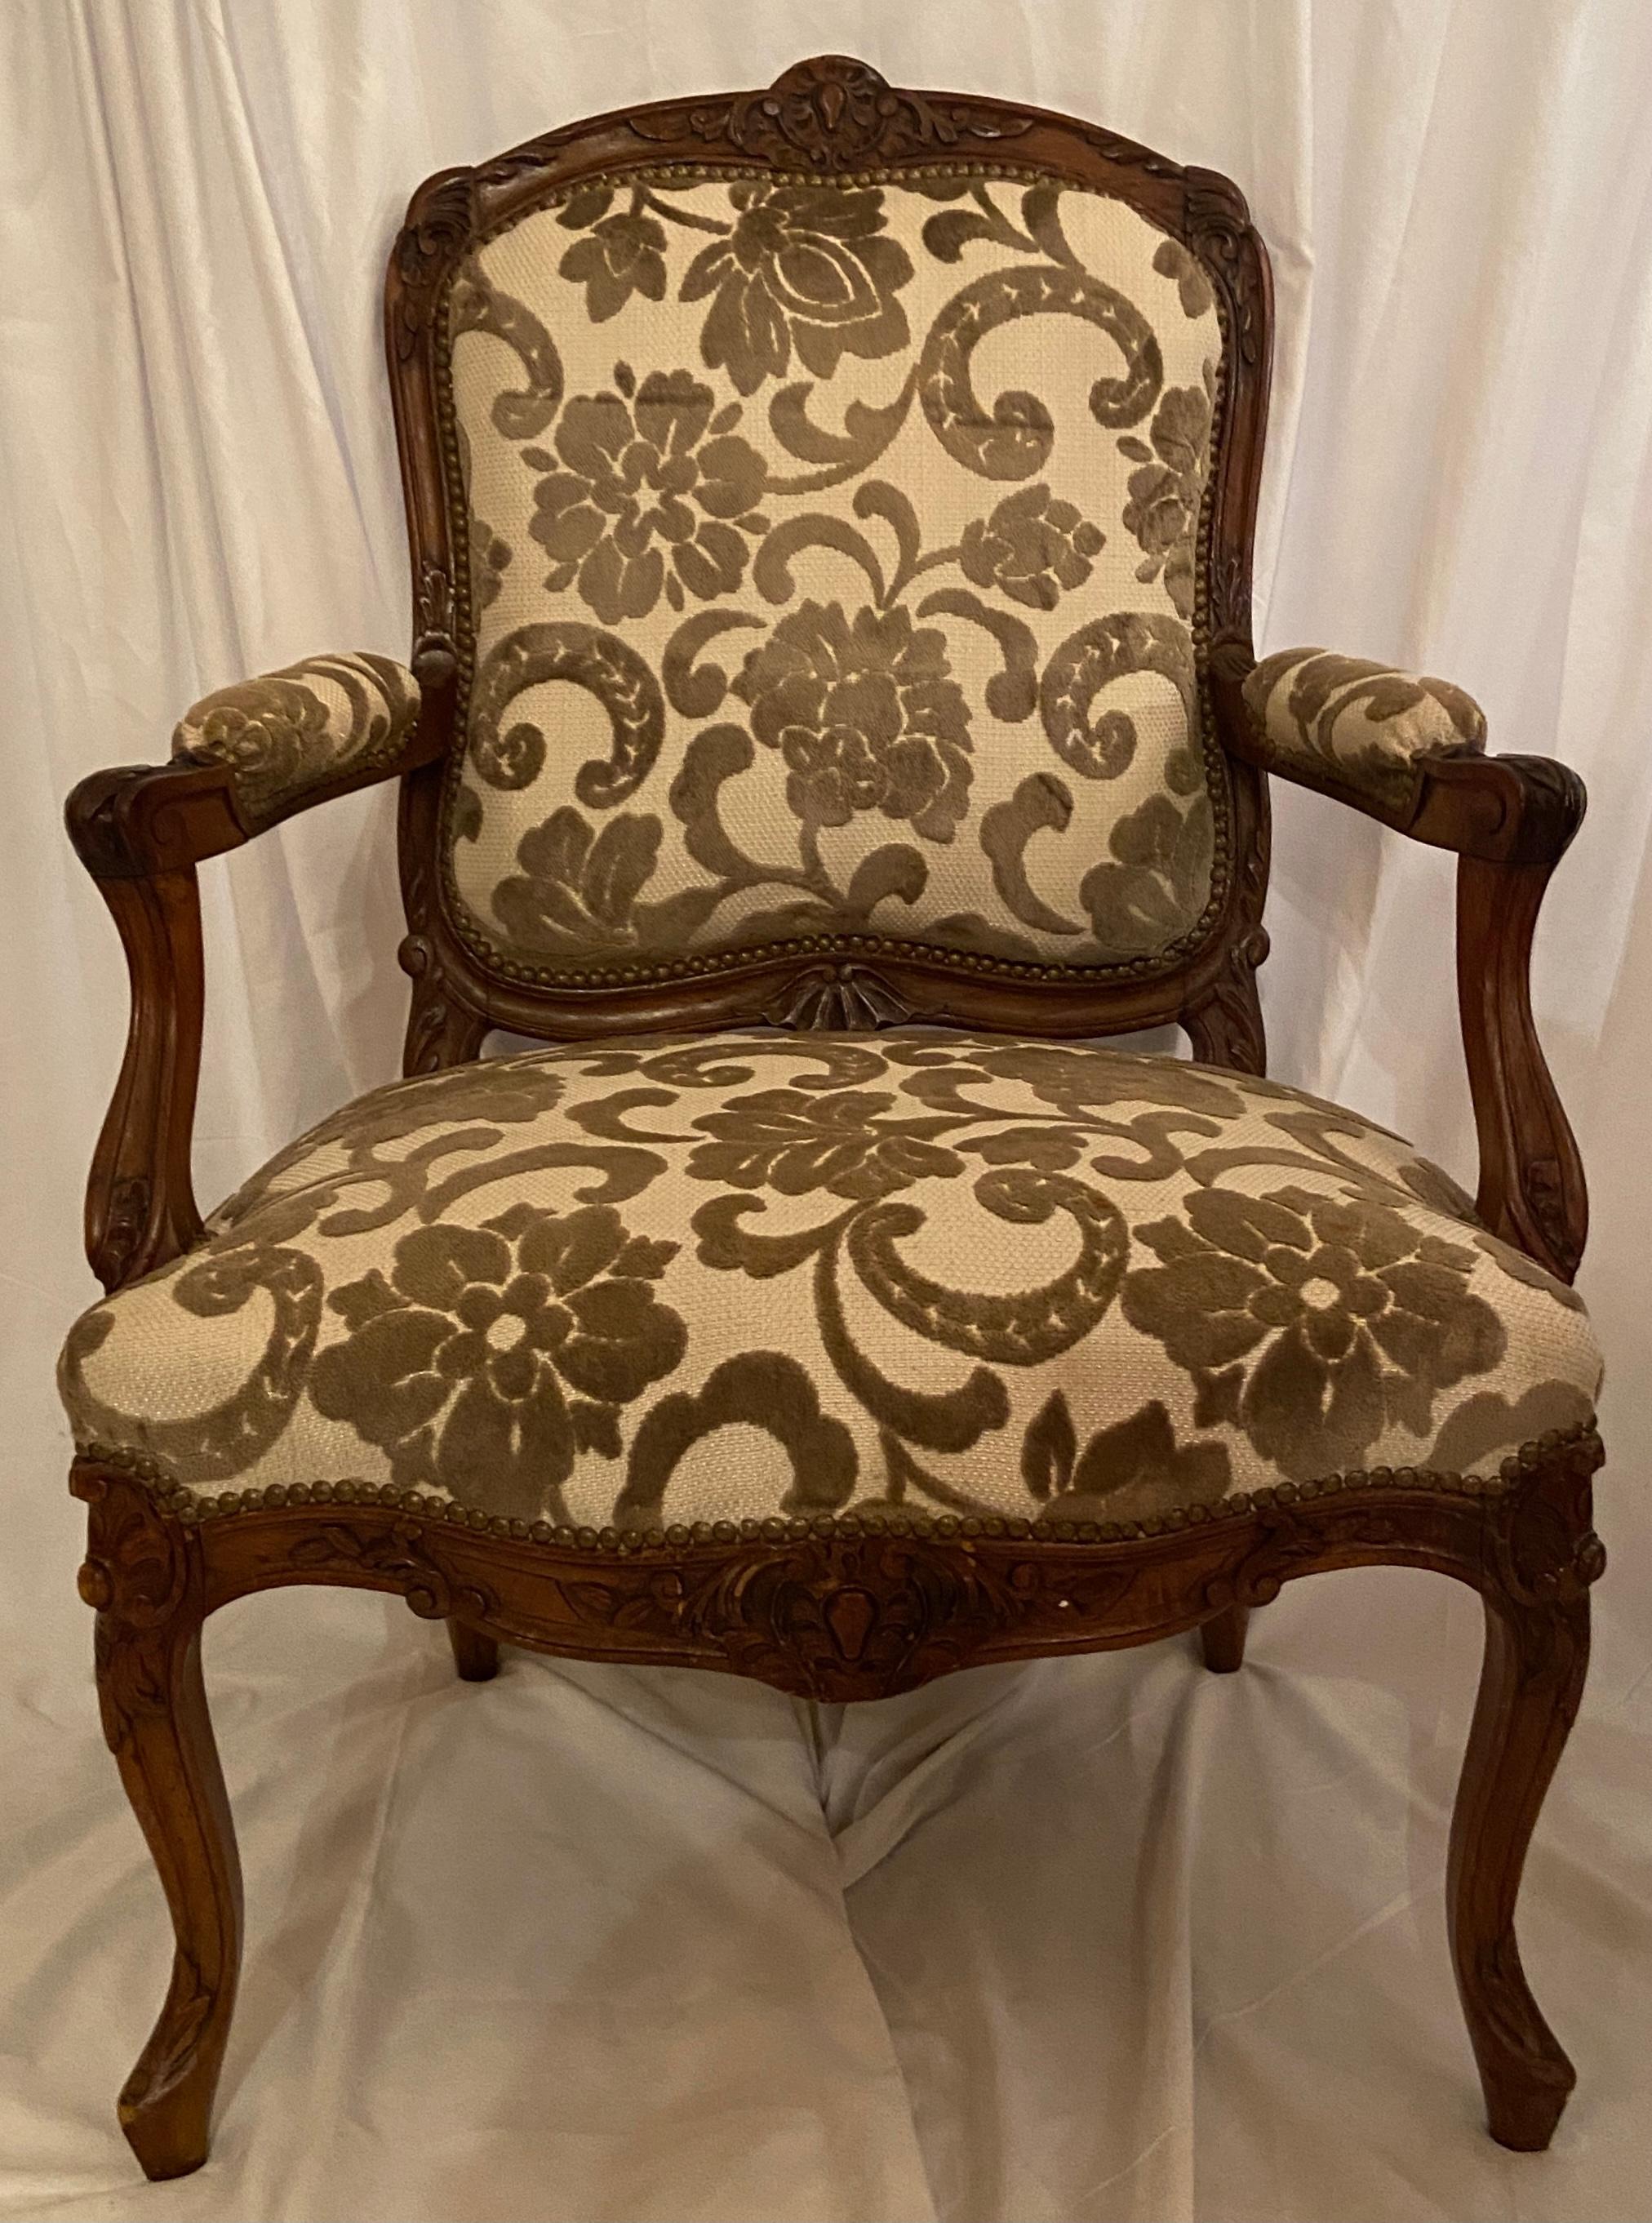 Paire de fauteuils anciens en noyer sculpté et tapissés d'ivoire, circa 1860.
Ces fauteuils joliment sculptés s'intègrent aussi bien dans un cadre traditionnel que contemporain.